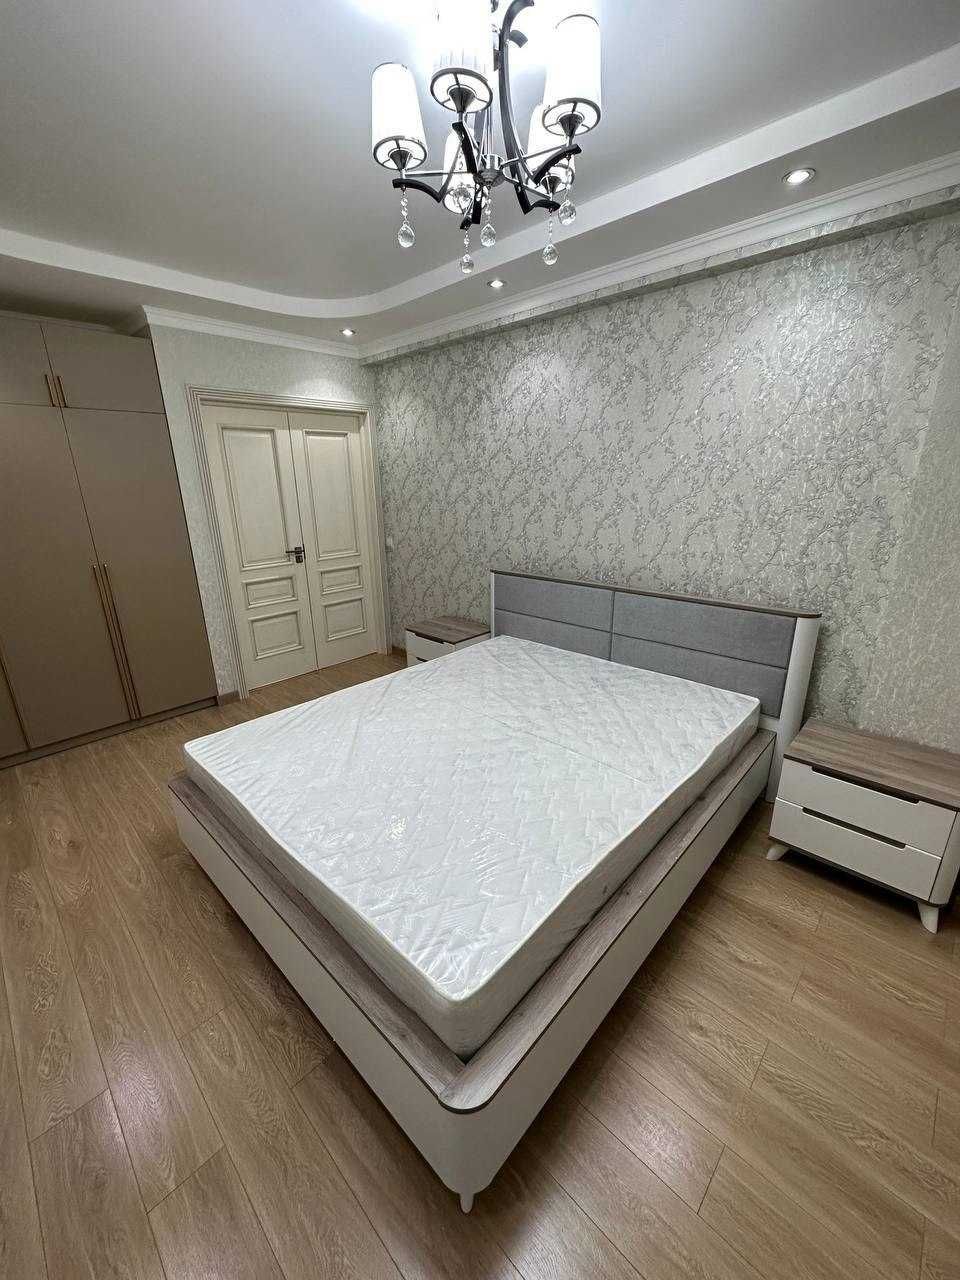 (АК129485) Сдается 3-х комнатная квартира в Чиланзарском районе.